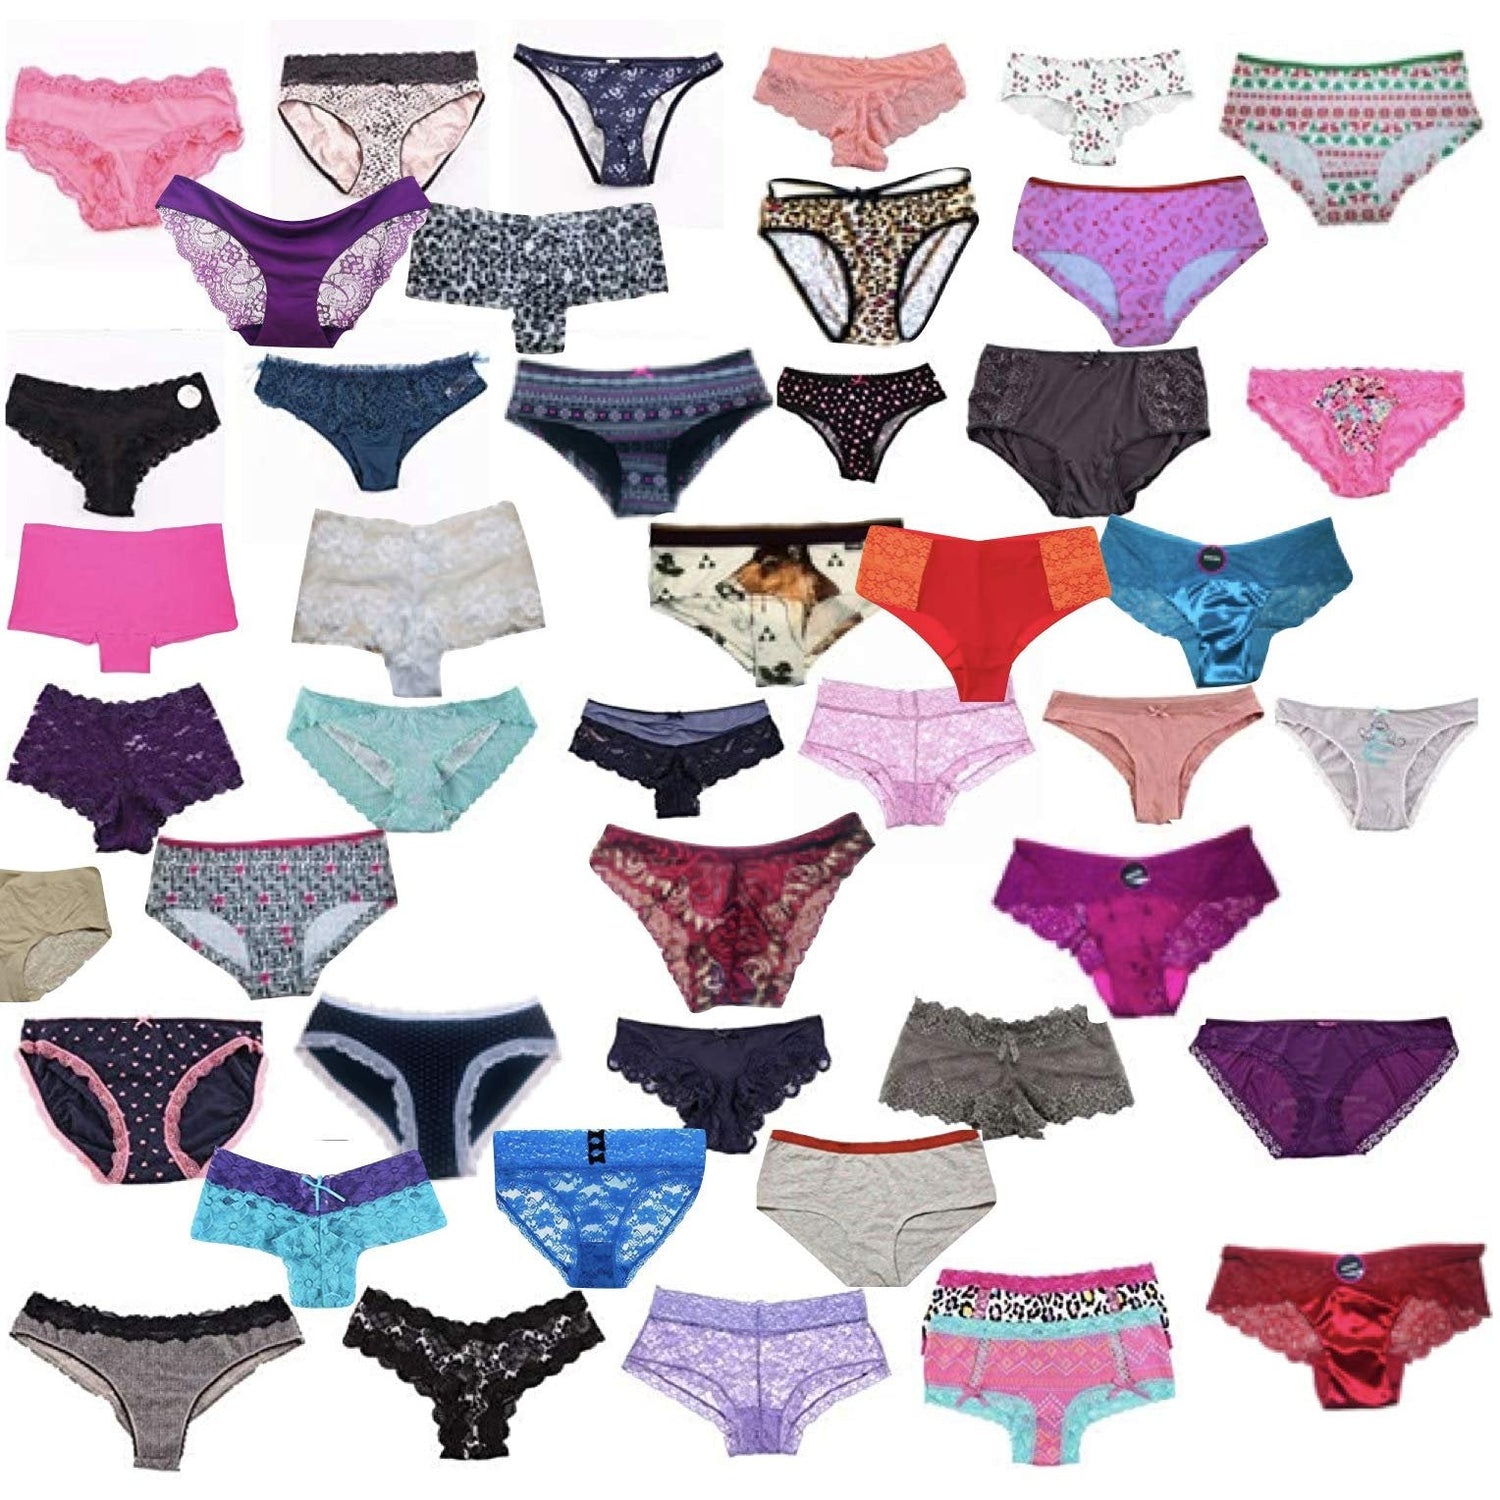 Women's Pack of 6 or 12 Mystery Panties - Bikinis, Briefs, or